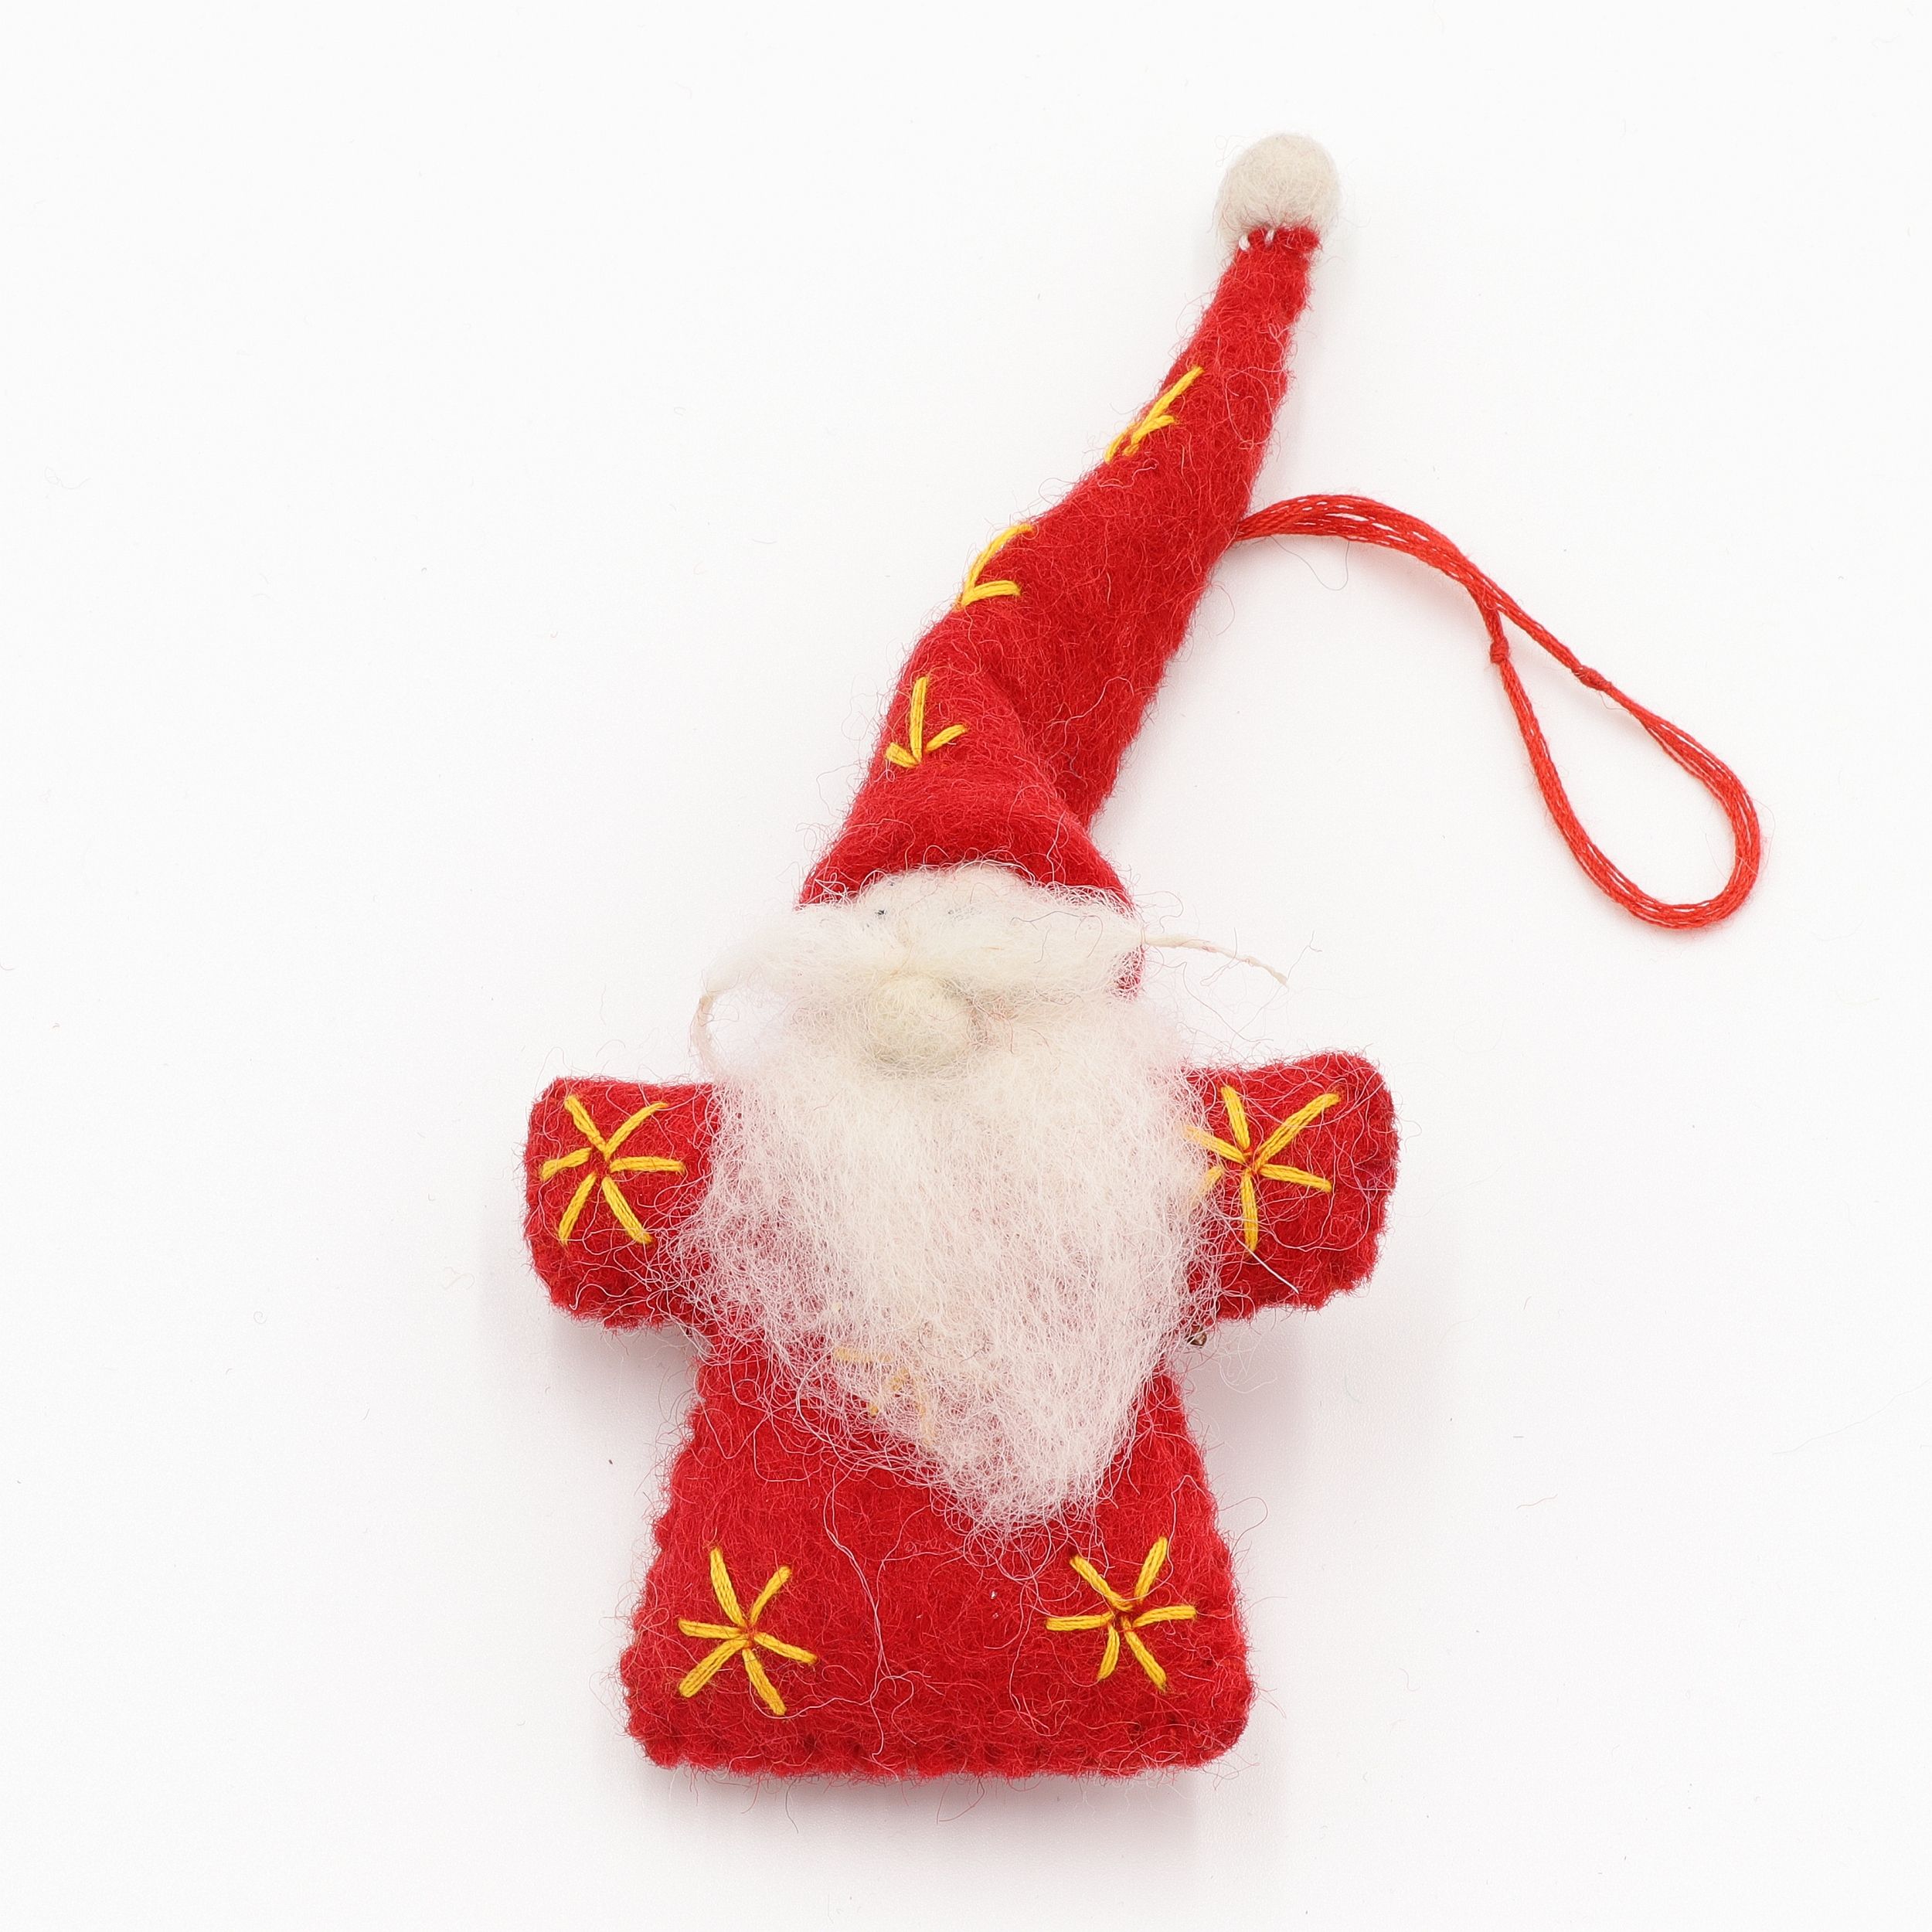 Weihnachtsmann mit Bart und roter Zipfelmütze, klein - Anhänger aus Filz - Geschenkanhänger oder Baumschmuck - echte Handarbeit und fair gehandelt